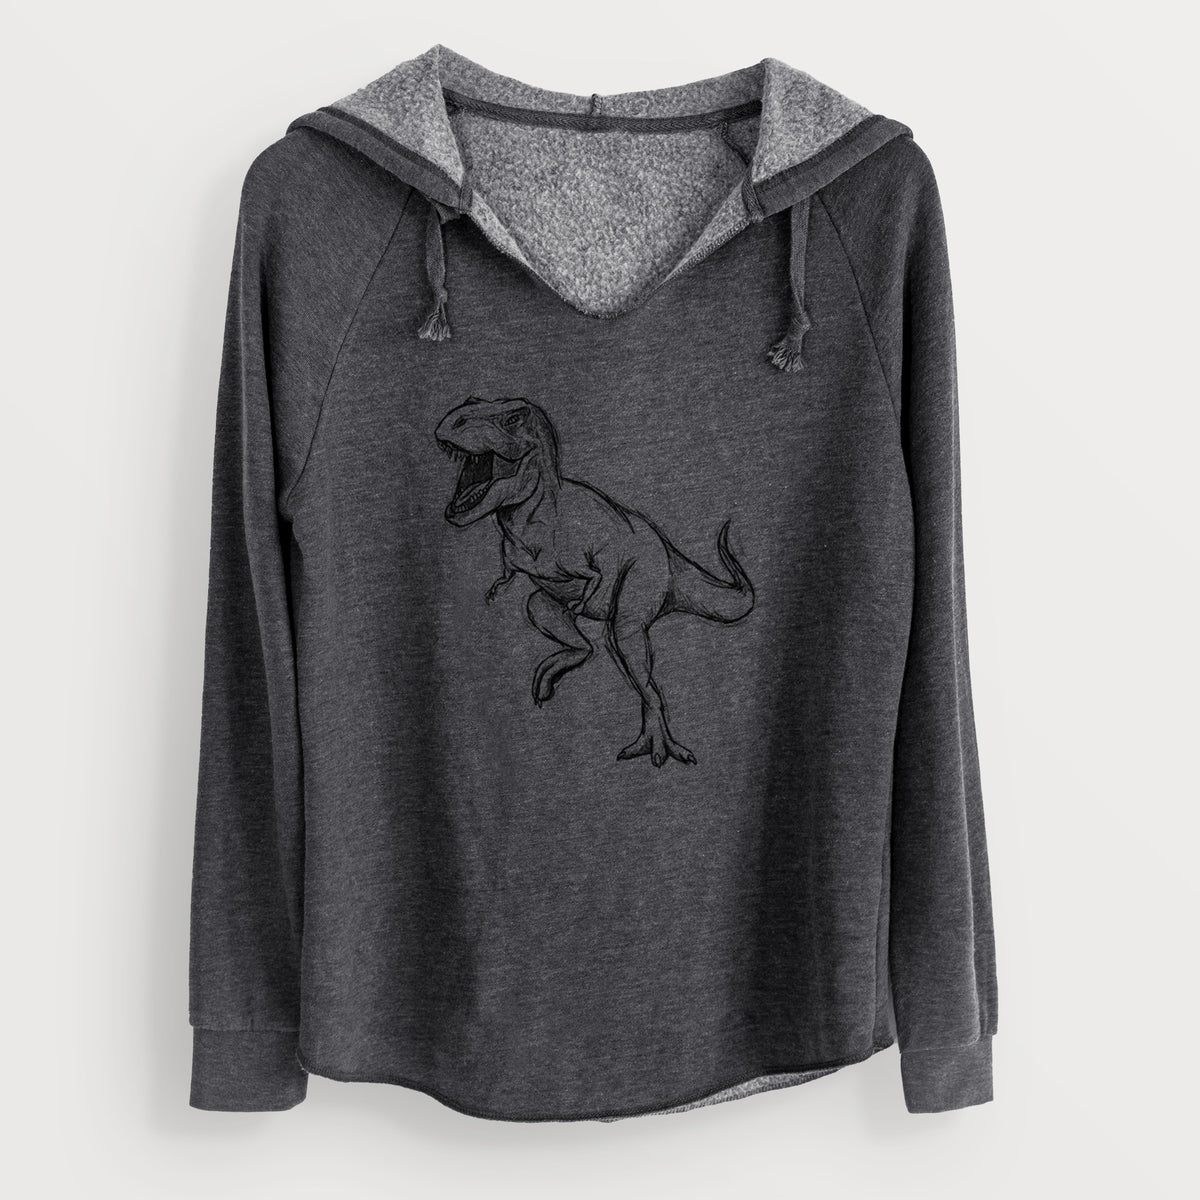 Tyrannosaurus Rex - Cali Wave Hooded Sweatshirt